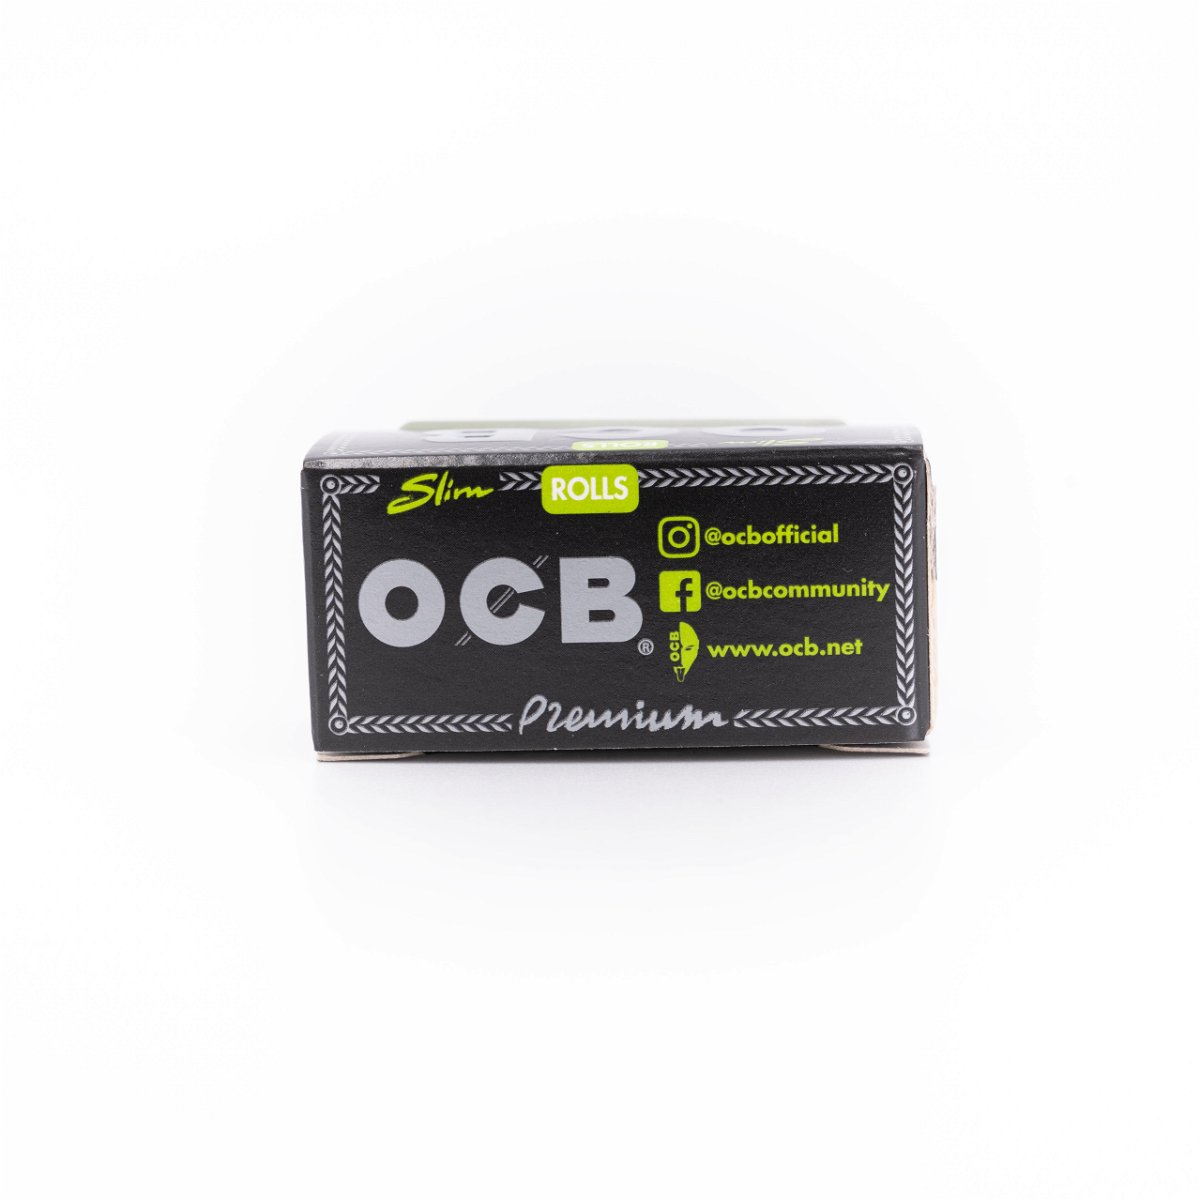 OCB Rolls Premium Slim